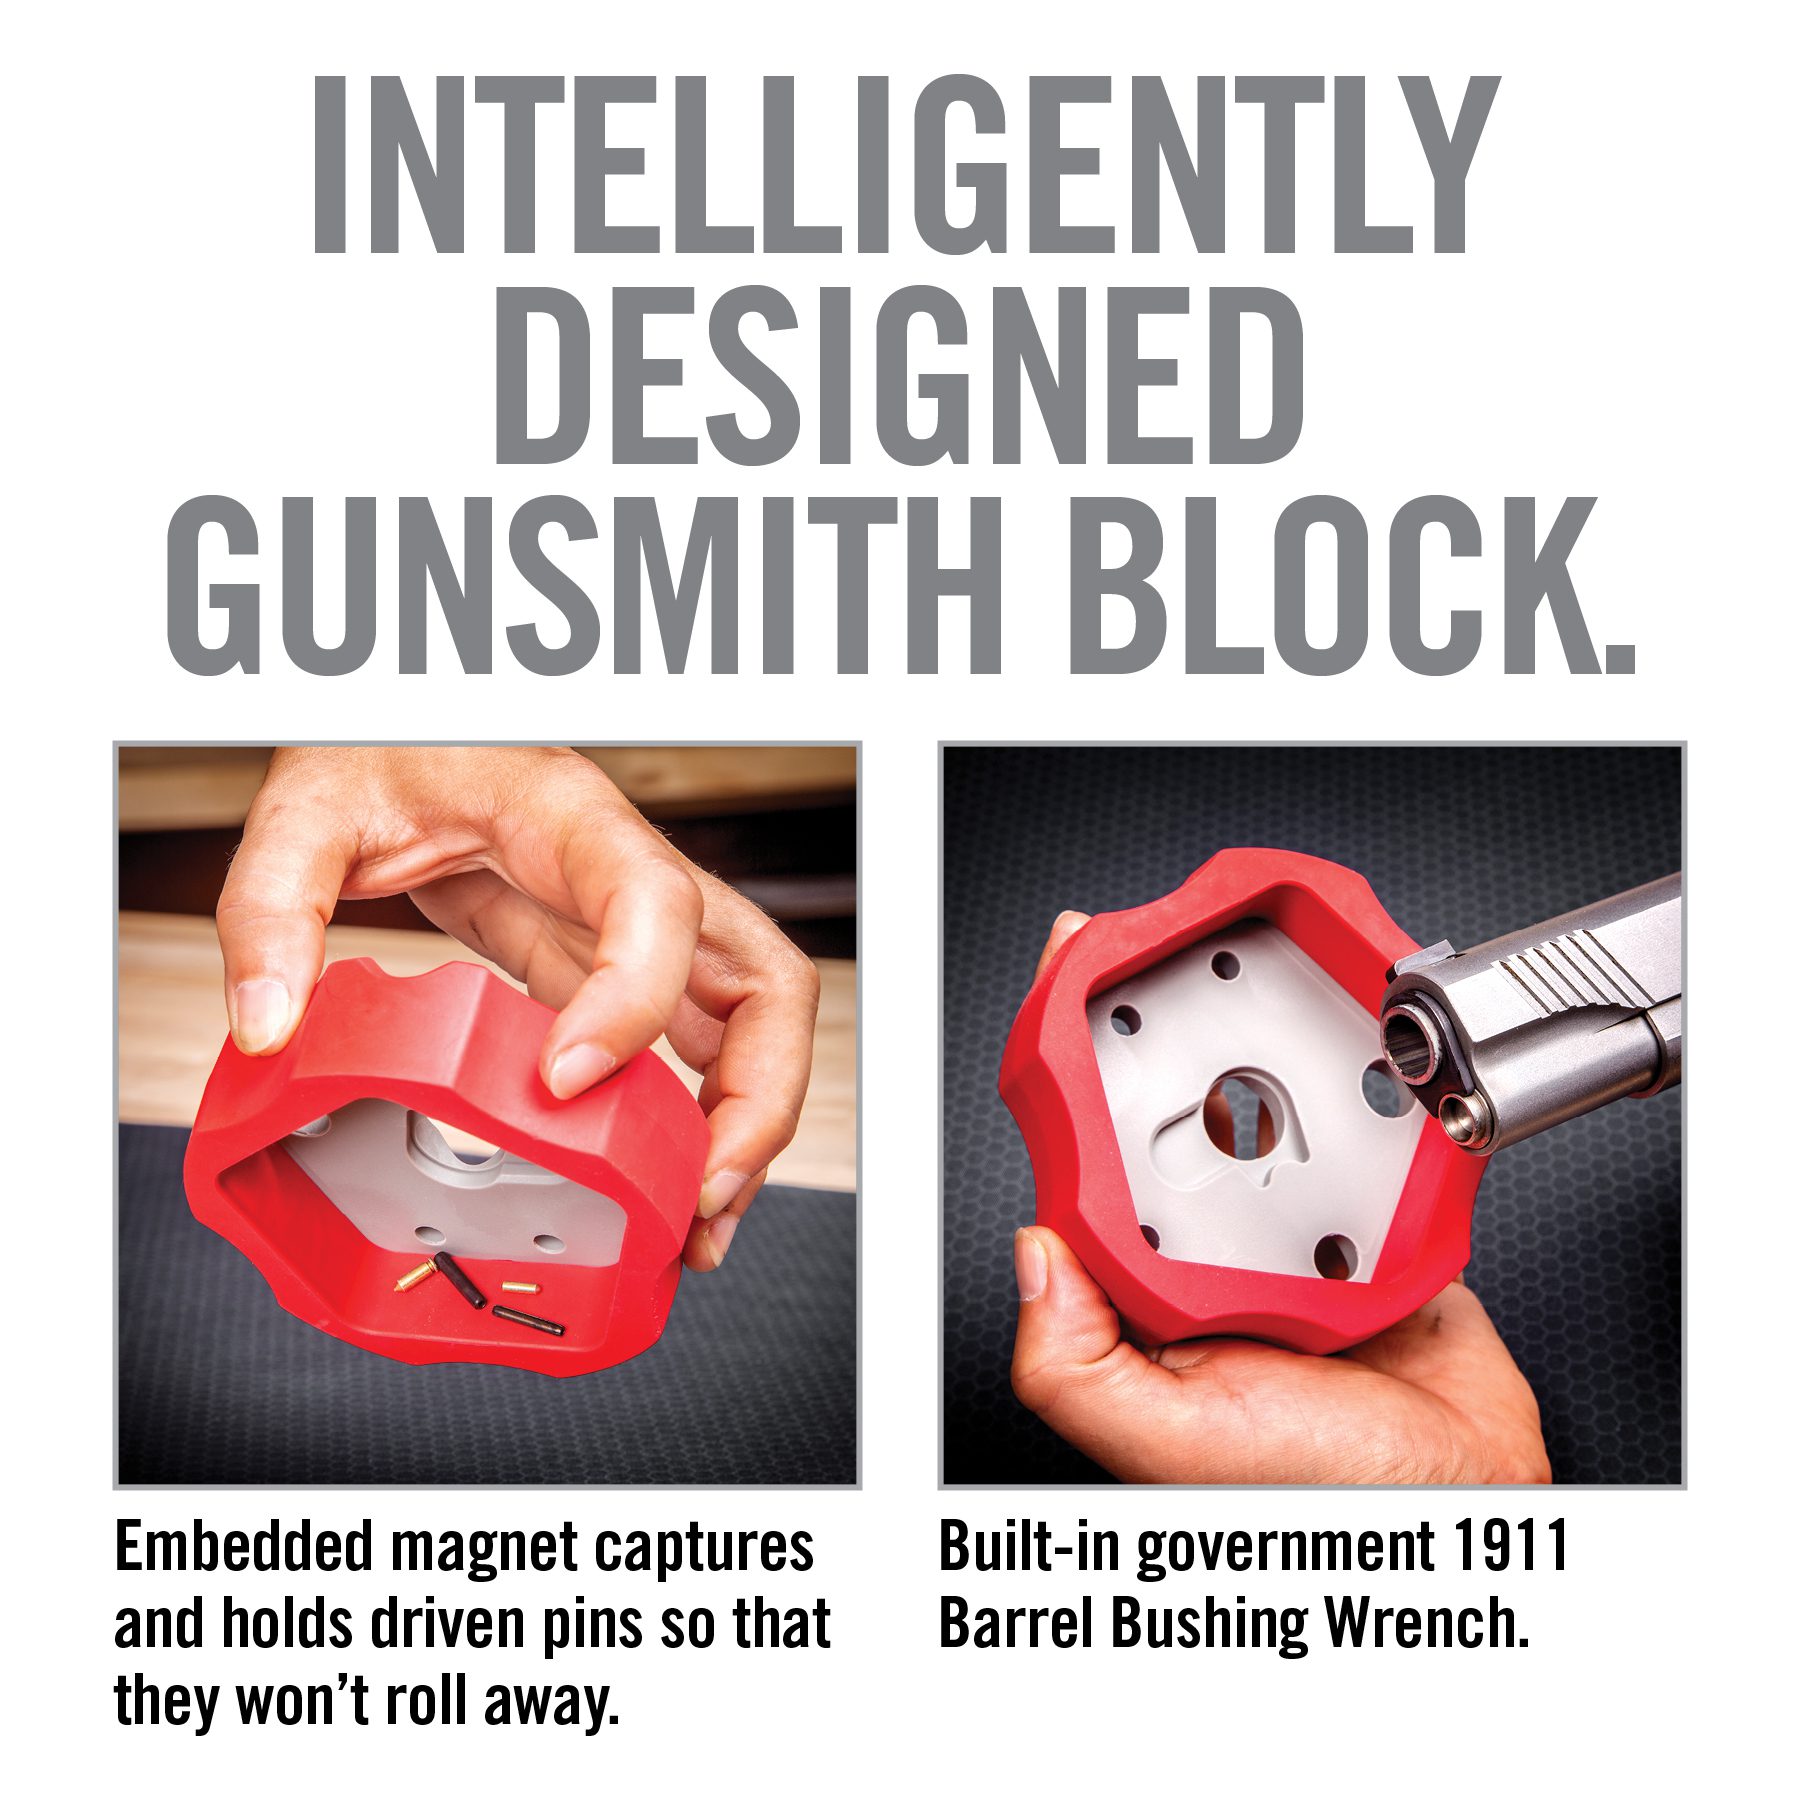 an advertisement for a gun and knife sharpener